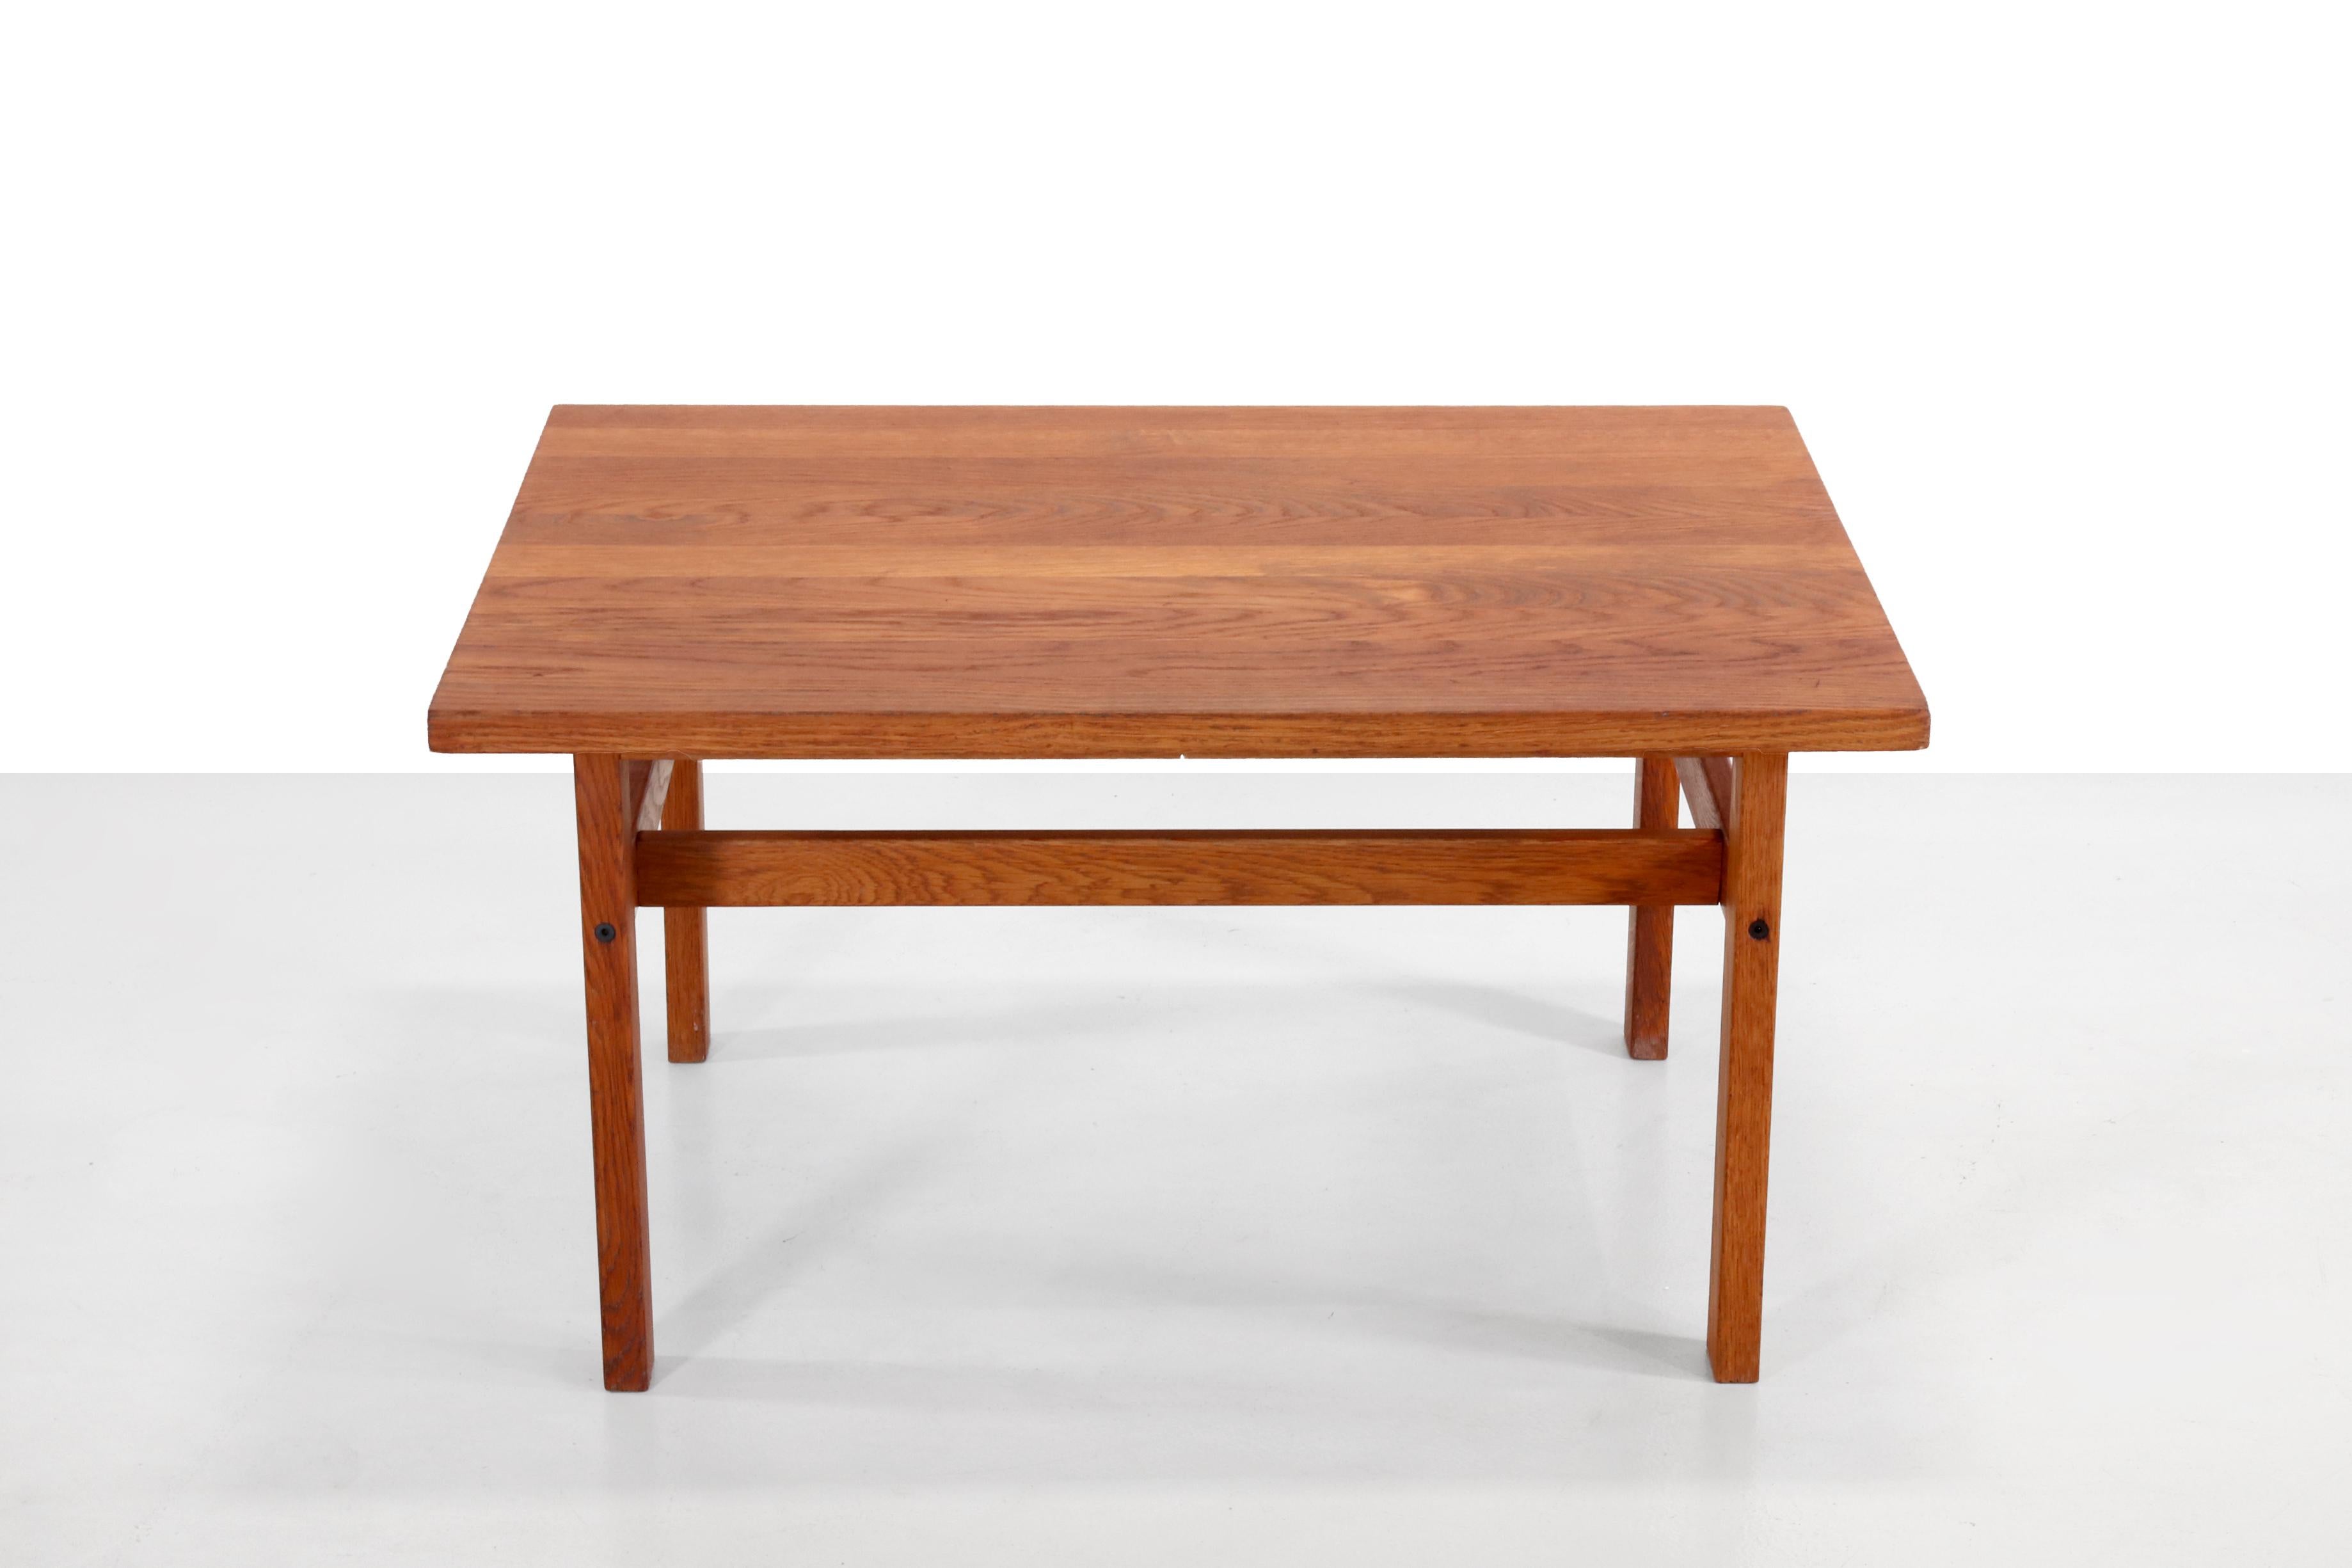 Belle table FDB en bois de chêne massif avec la marque des fabricants de meubles danois et avec le numéro de modèle 240. 
Cette table basse ou table d'appoint de style shaker mesure 85 cm de large, 64,5 cm de profondeur et 45 cm de haut.